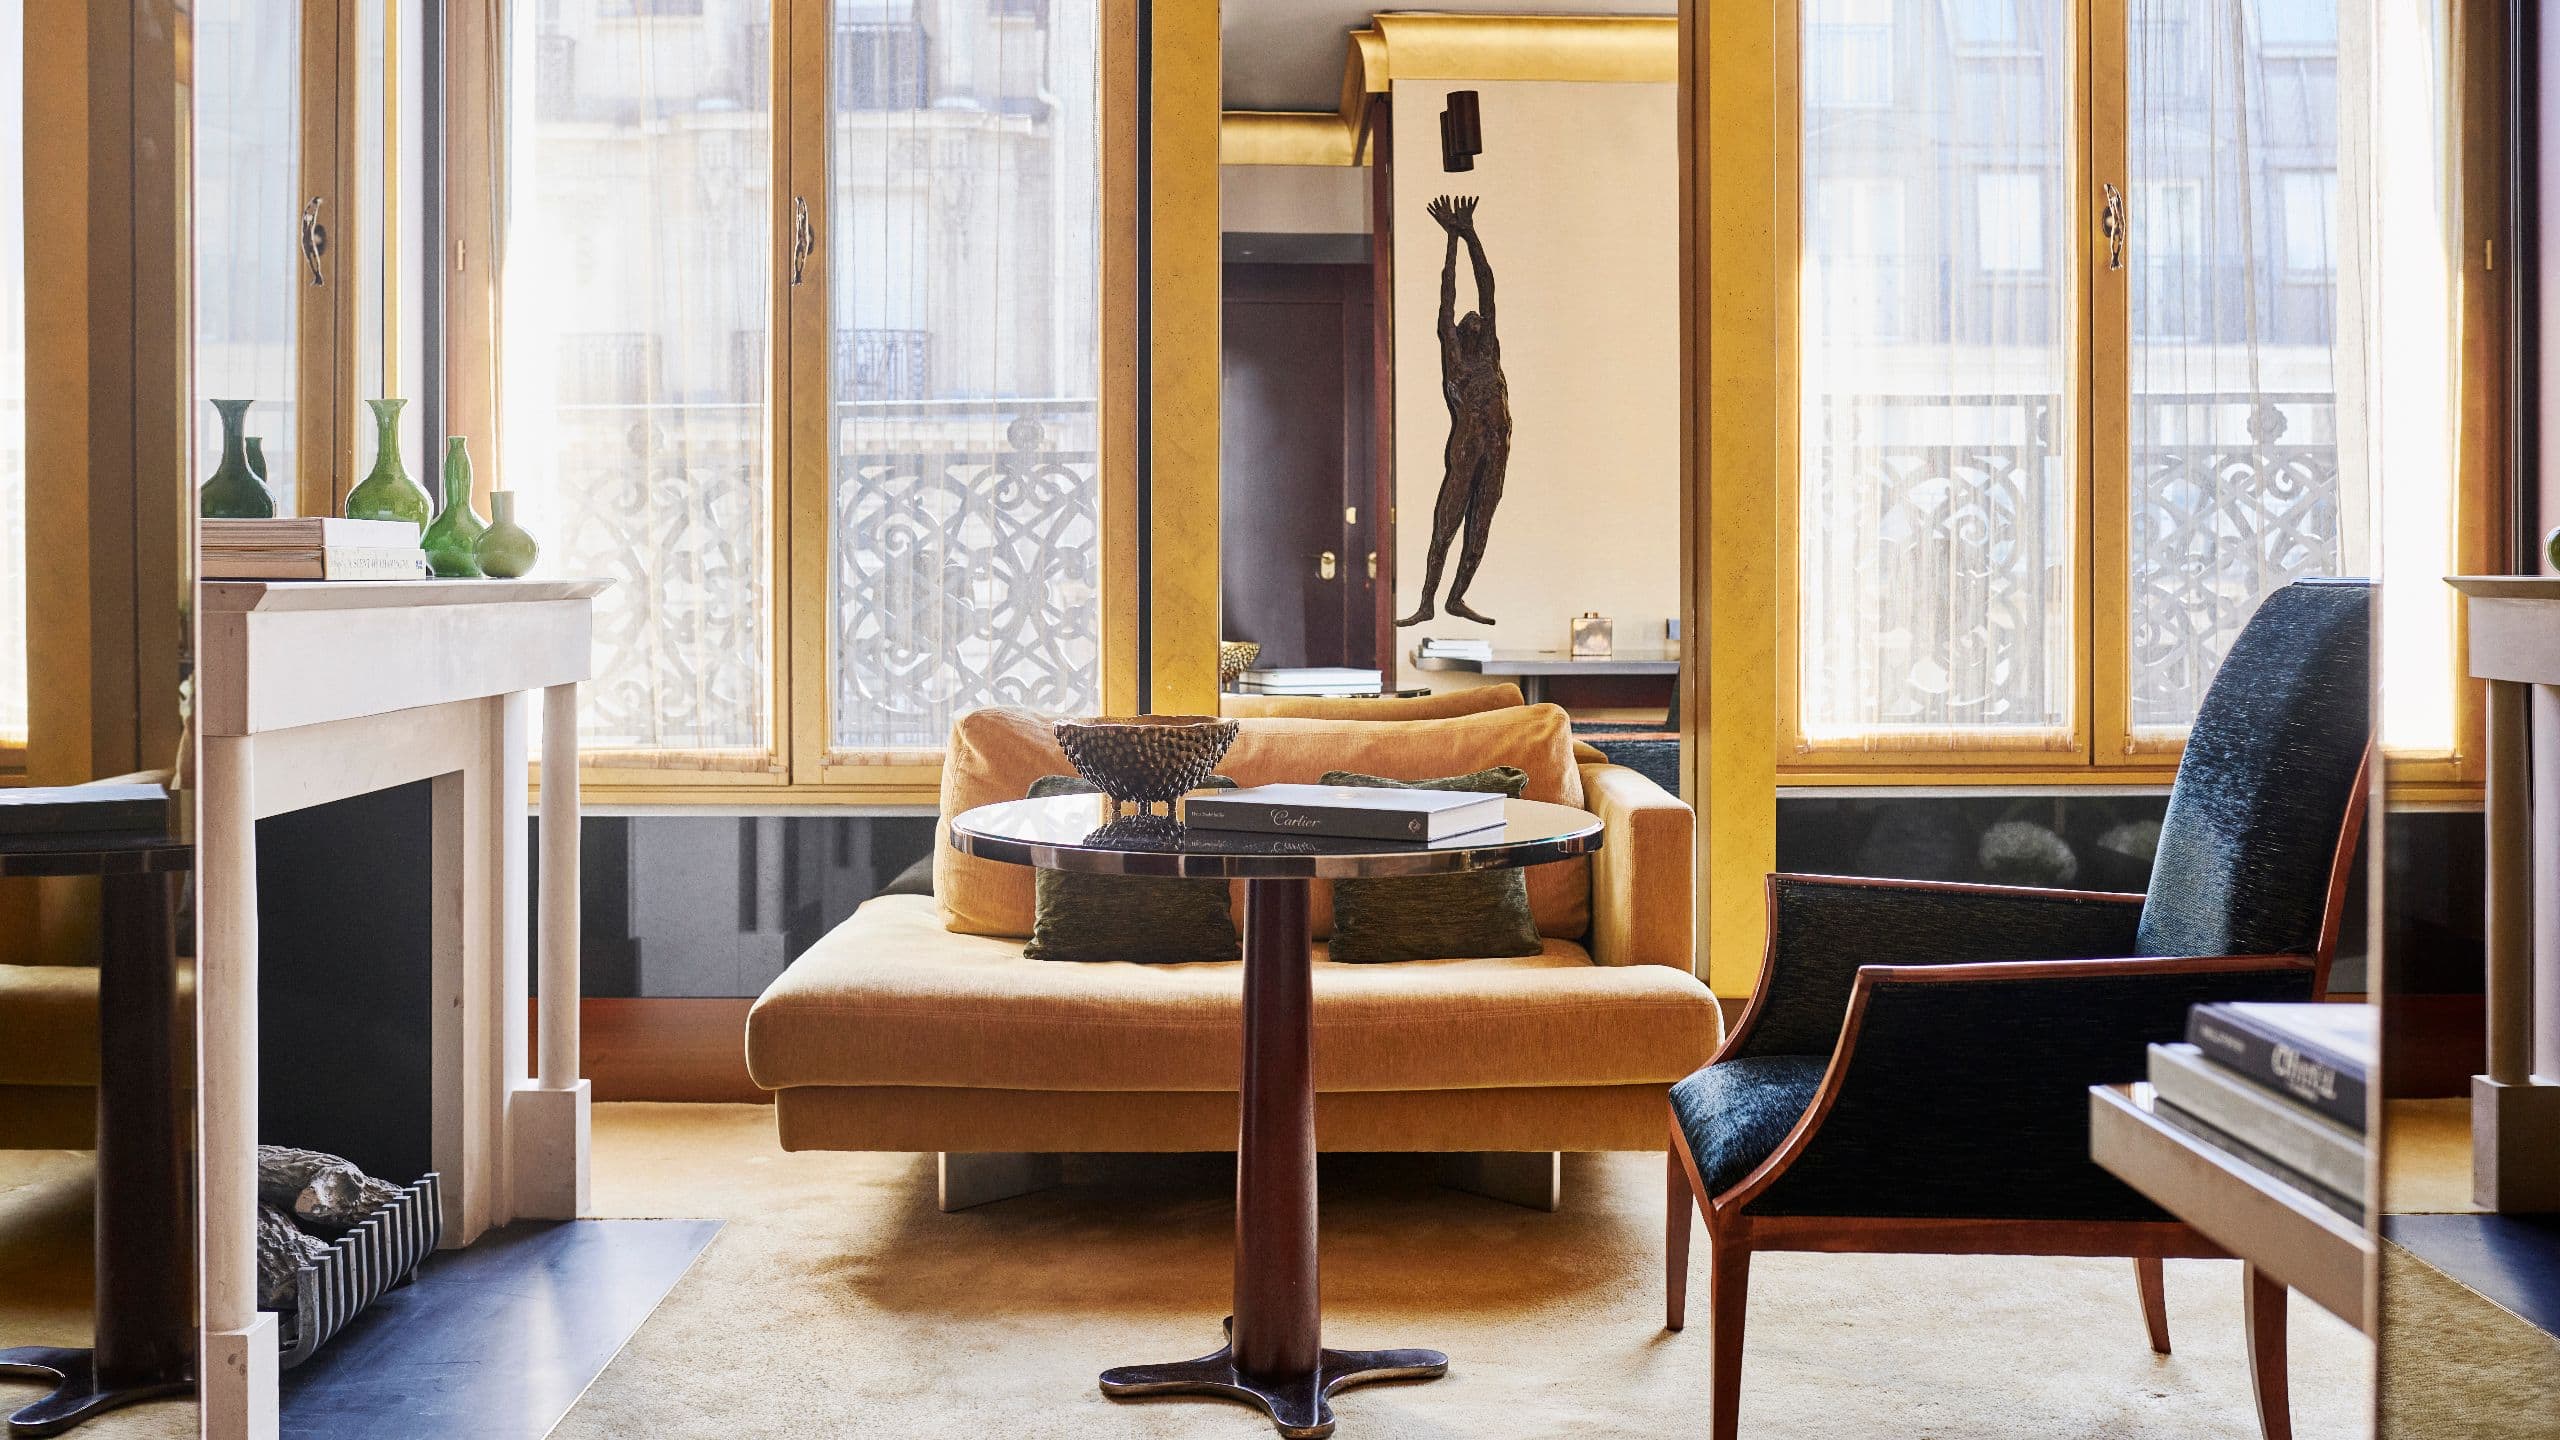 パリのラグジュアリーホテルの客室とスイート | パーク ハイアット 